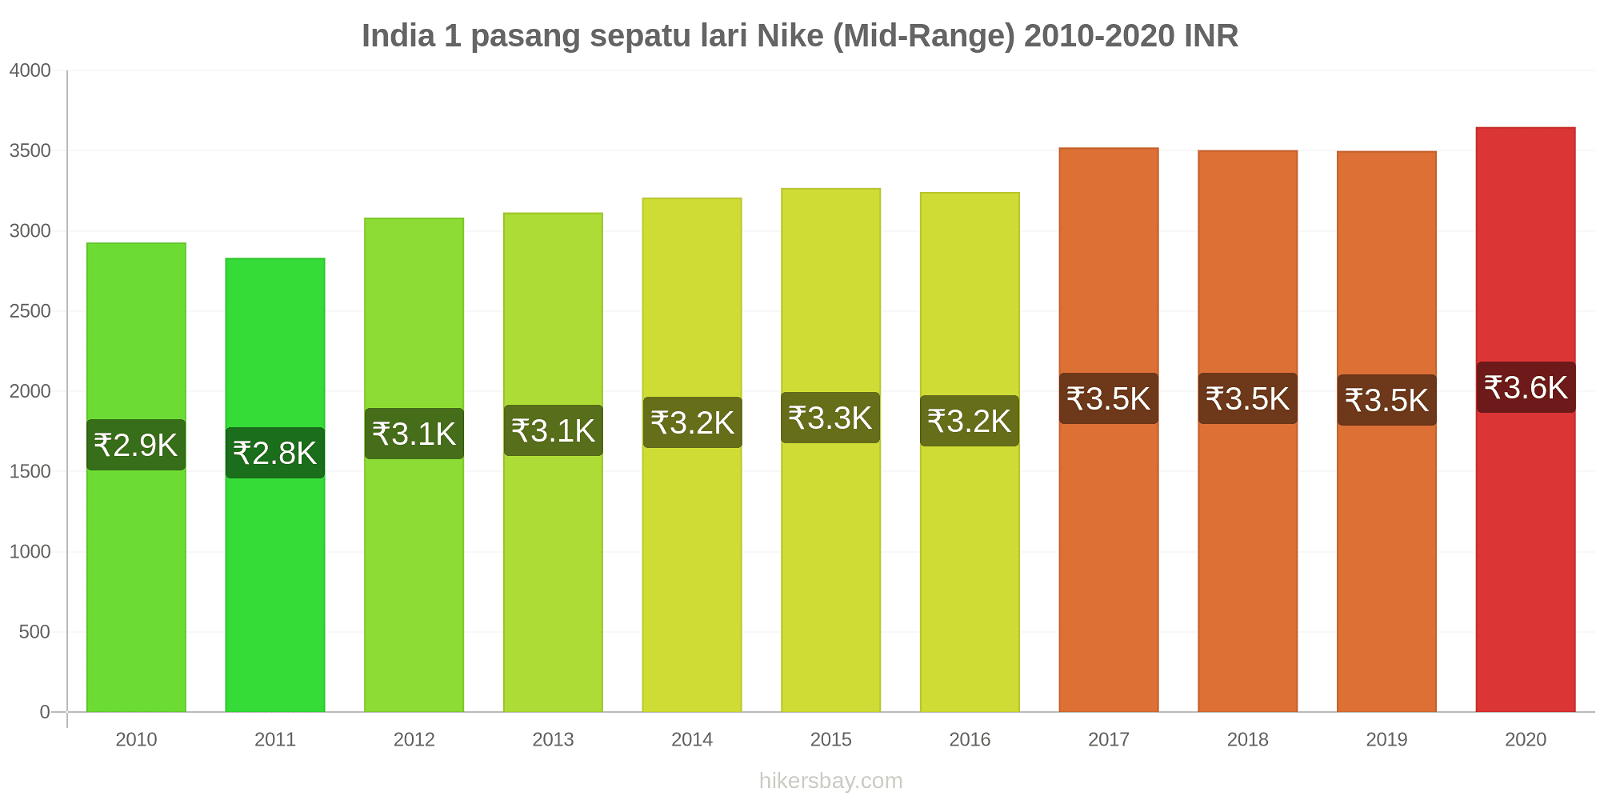 India perubahan harga 1 pasang sepatu lari Nike (Mid-Range) hikersbay.com